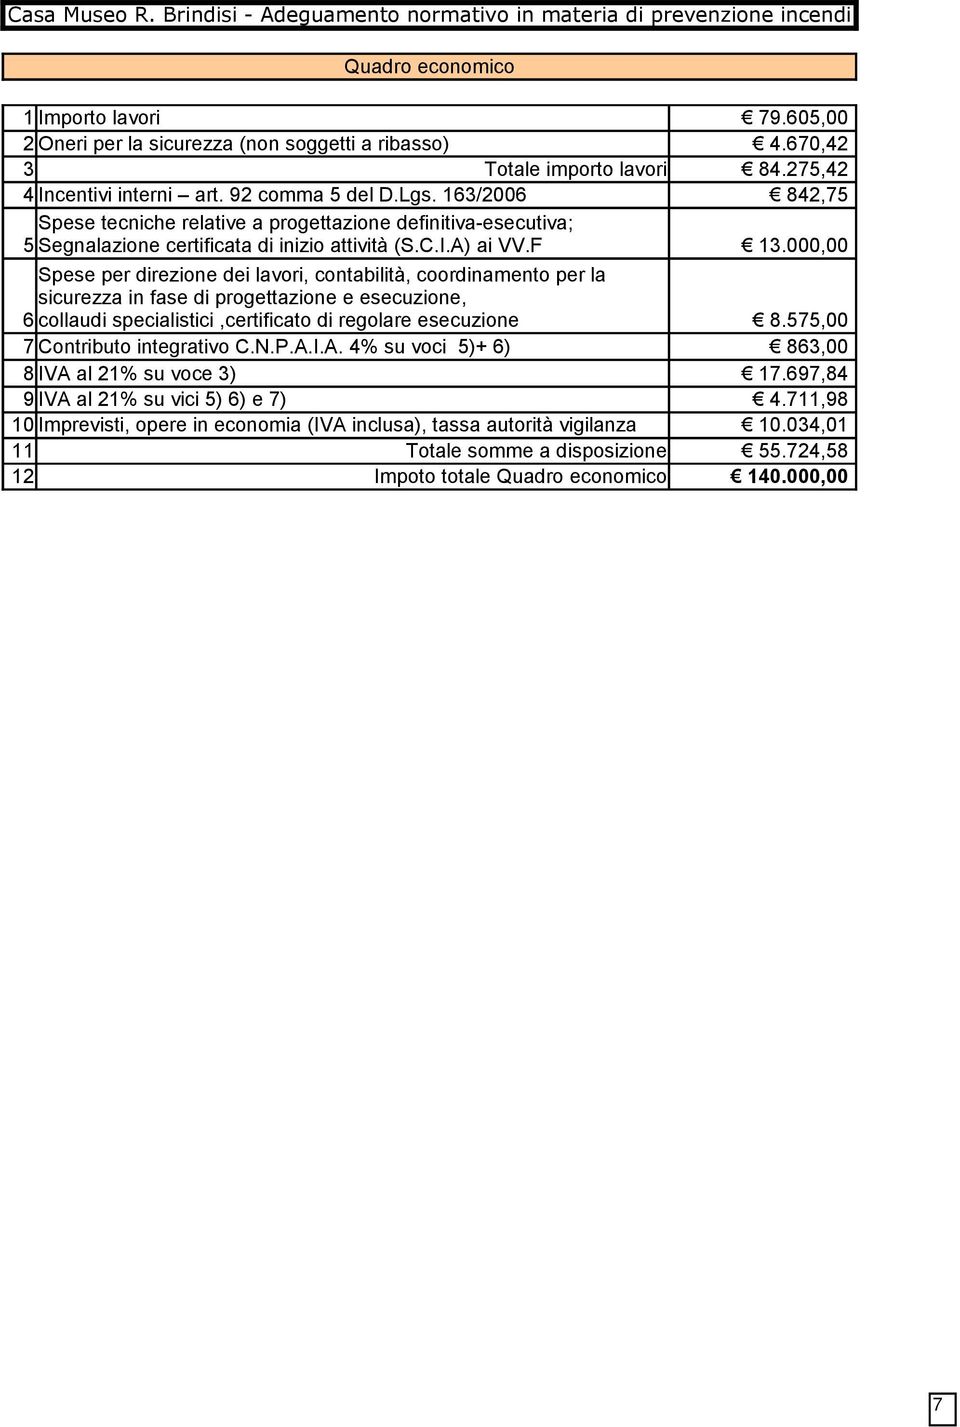 163/2006 842,75 Spese tecniche relative a progettazione definitiva-esecutiva; 5 Segnalazione certificata di inizio attività (S.C.I.A) ai VV.F 13.